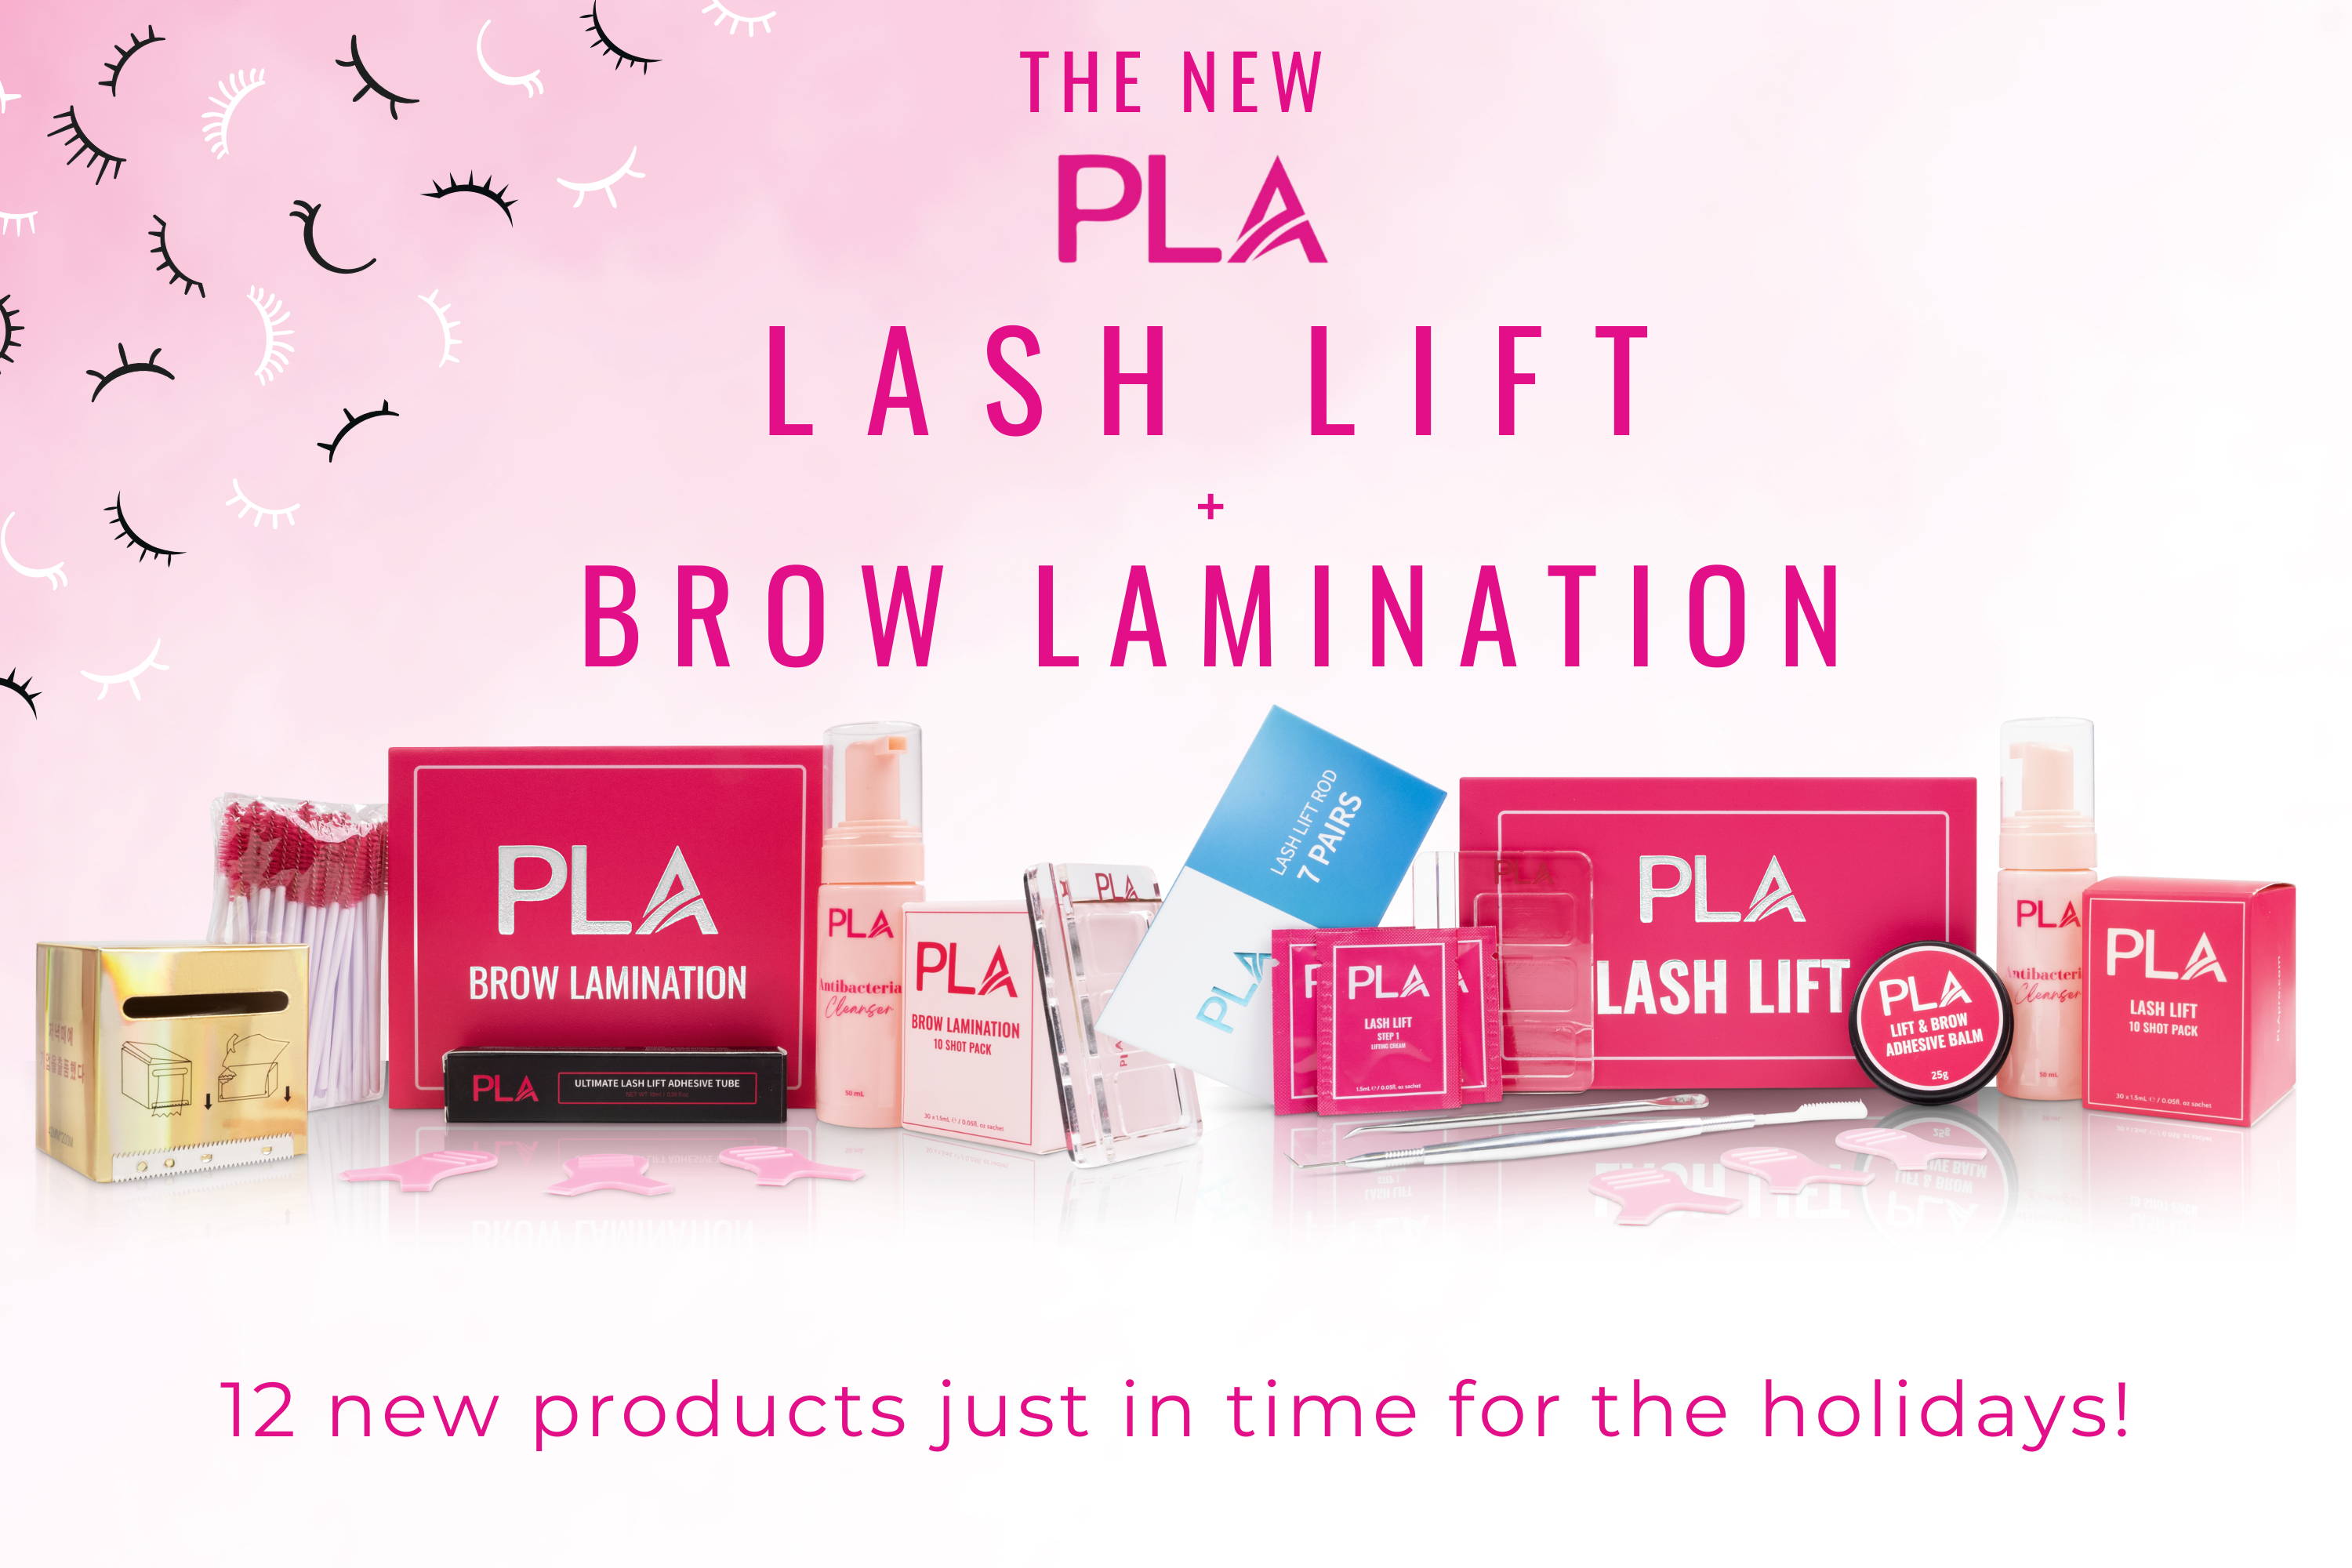 PLA New Brow Lamination and Lash Lift Kits